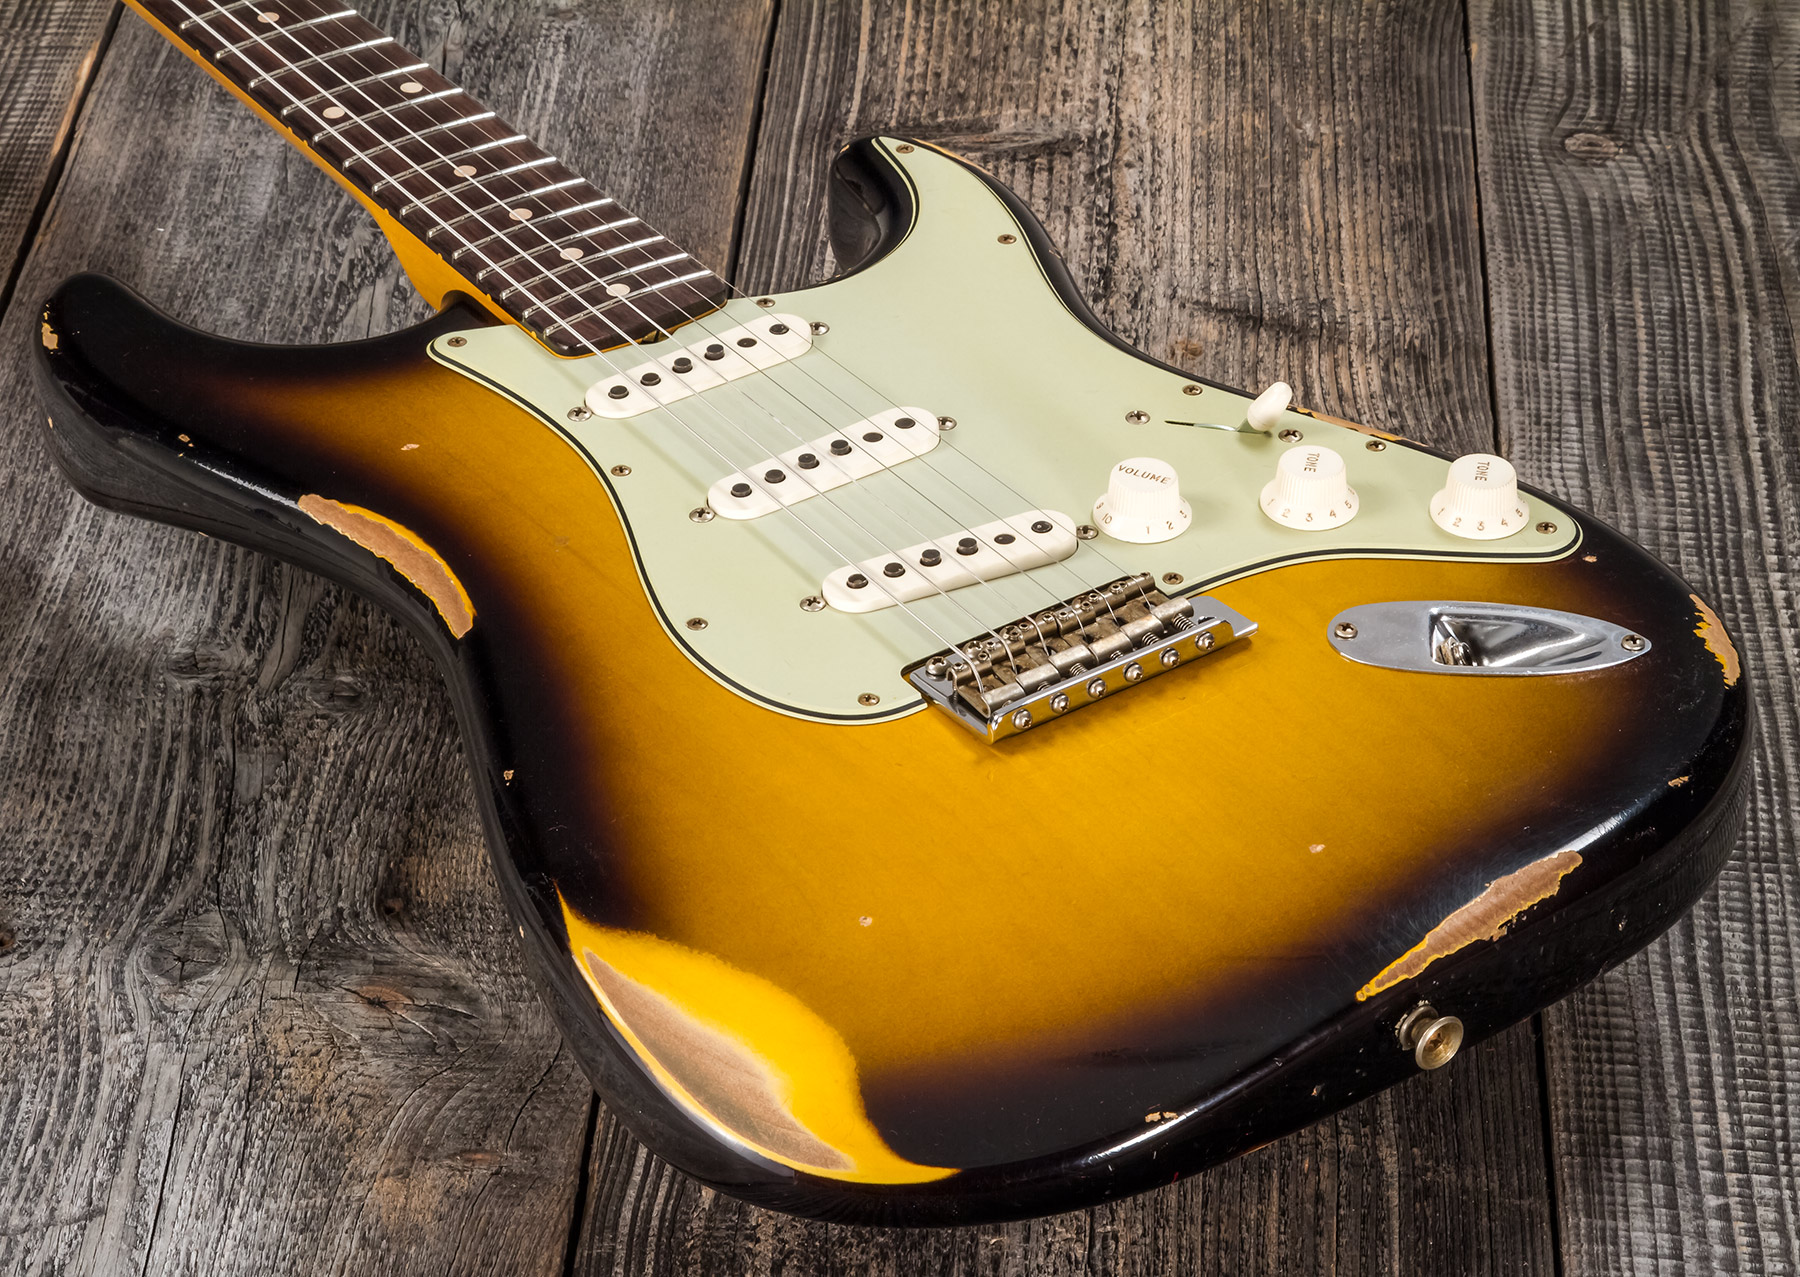 Fender Custom Shop Strat 1959 3s Trem Rw #r117661 - Relic 2-color Sunburst - Str shape electric guitar - Variation 3